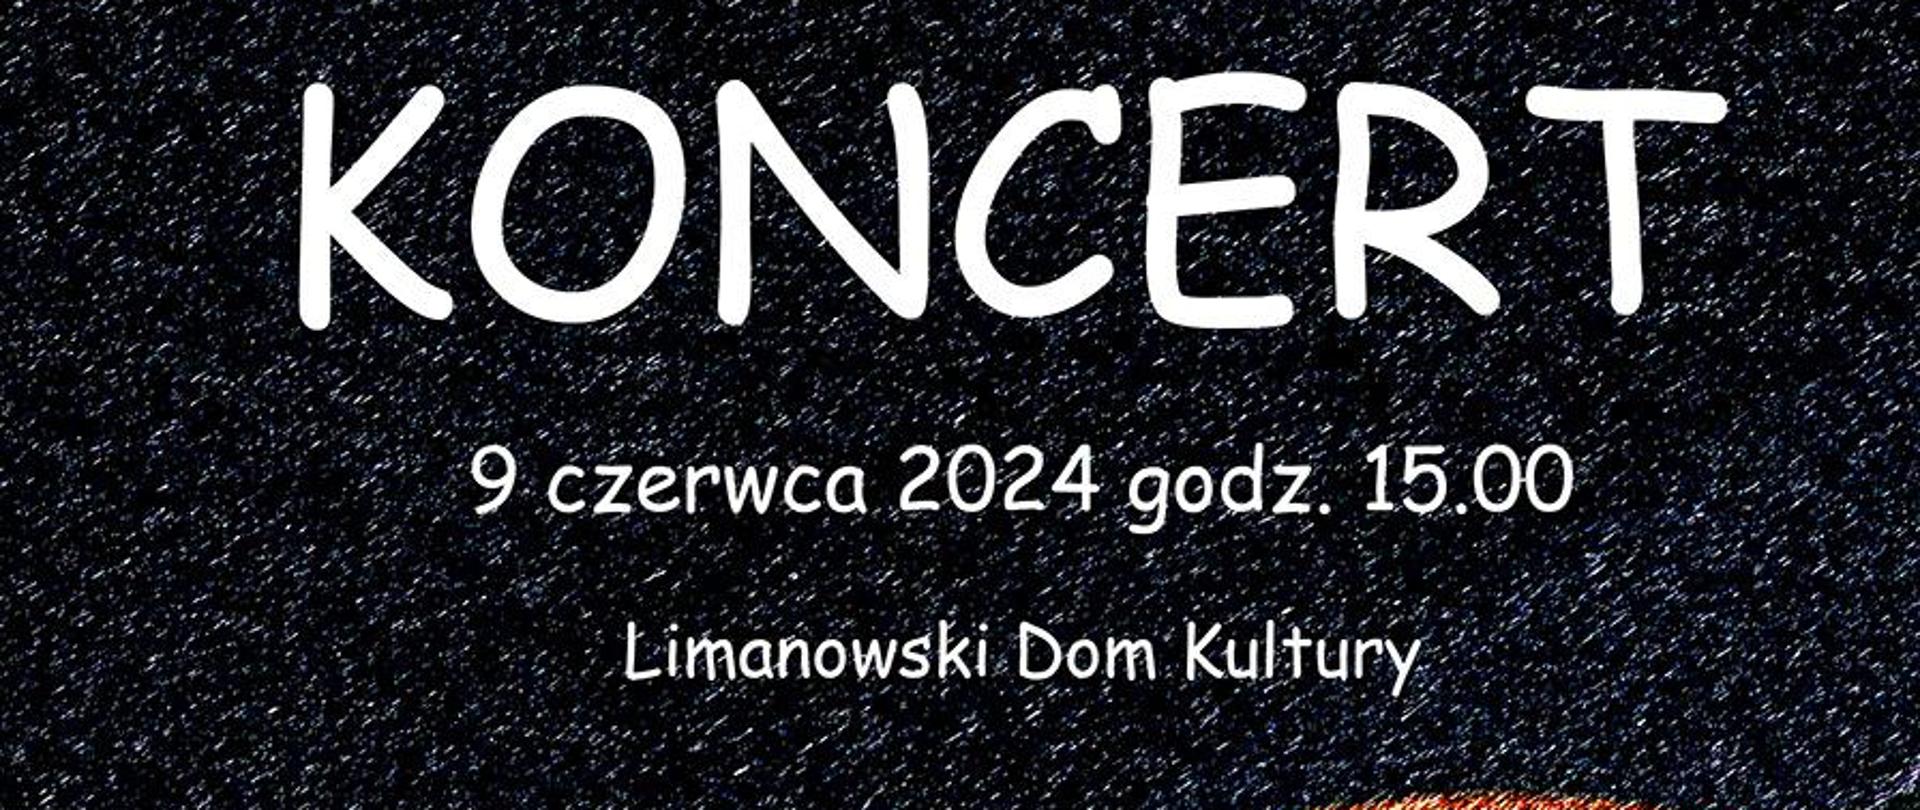 Plakat na ciemnym tle tekst państwowa szkoła muzyczna pierwszego i drugiego stopnia w limanowej zaprasza na koncert 9 czerwca 2024 roku o godzinie piętnastej w limanowskim domu kultury, poniżej grafika przedstawiająca skrzypce.